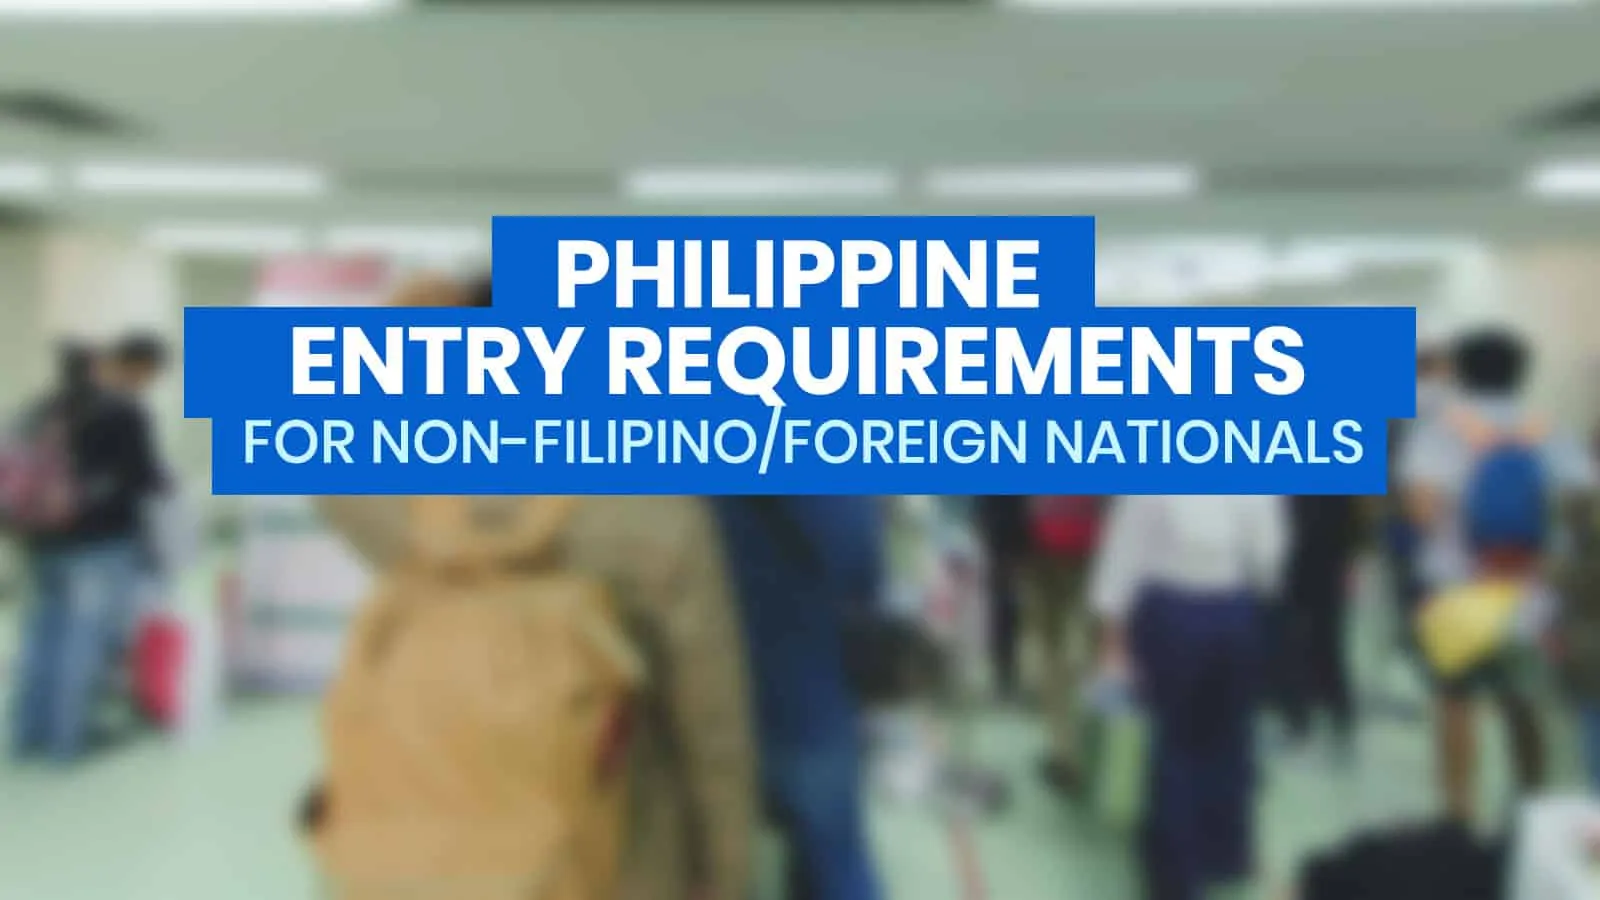 外国国民/非菲律宾人的菲律宾入学要求